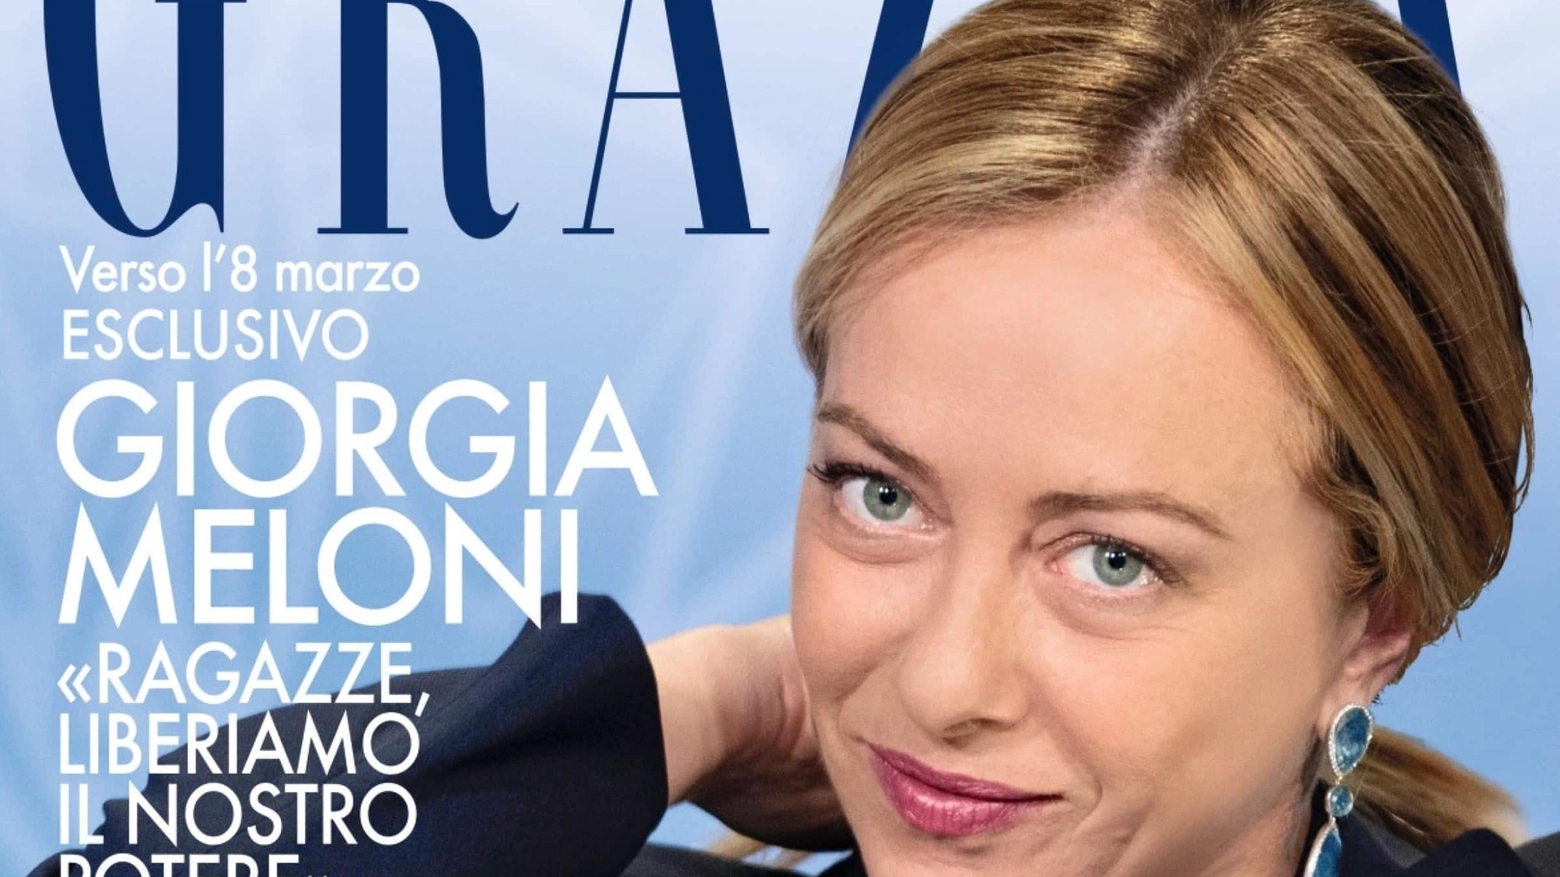 La presidente del Consiglio Giorgia Meloni in copertina sul settimanale ’Grazia’